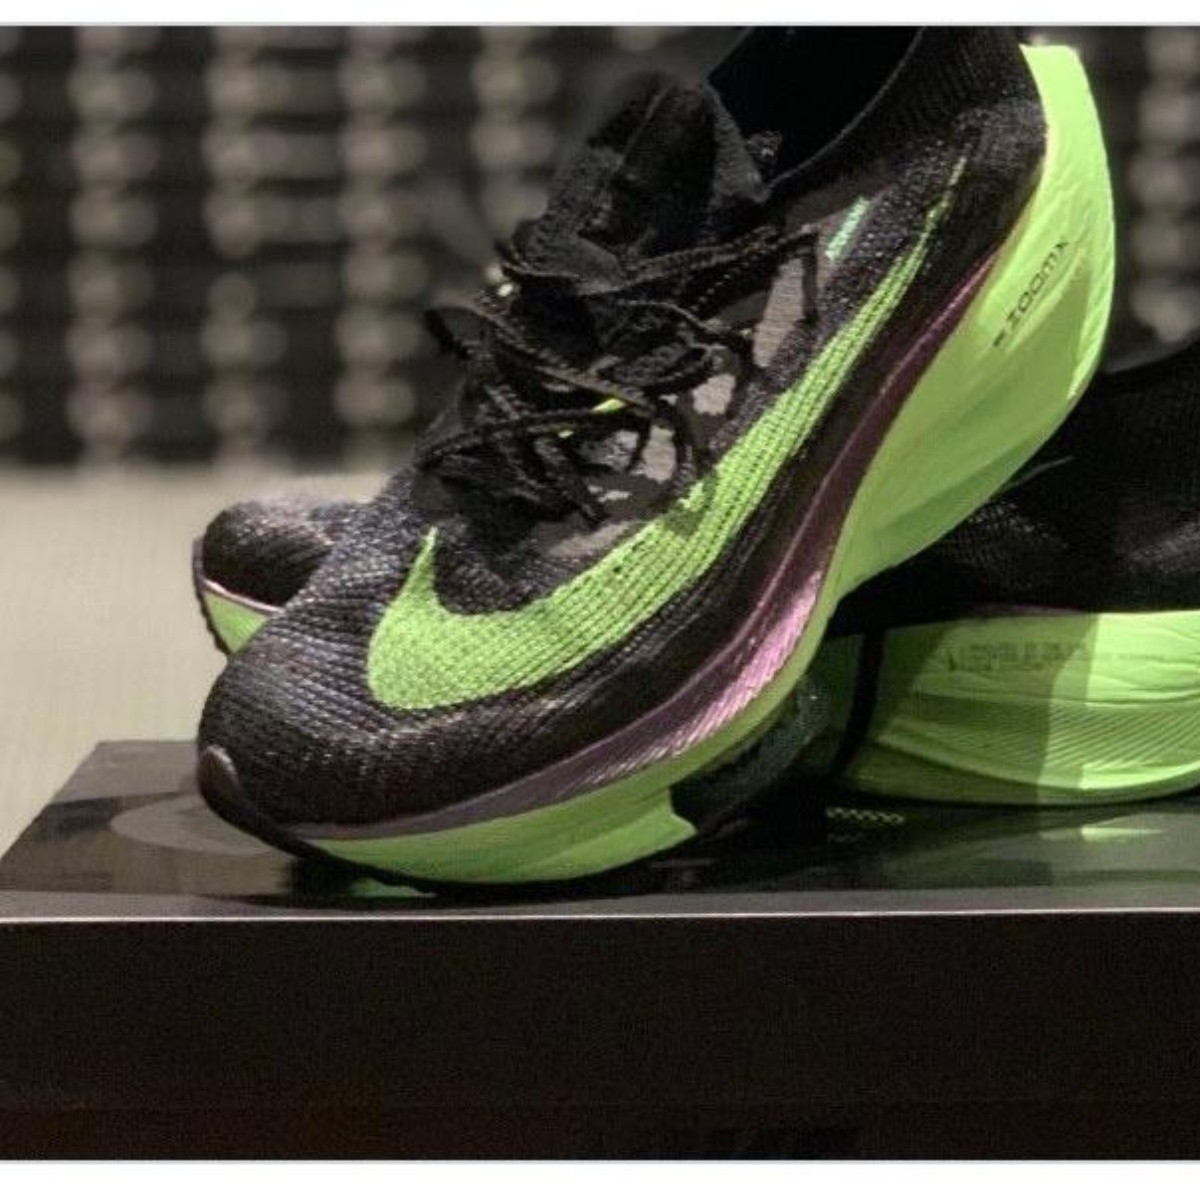 Nike les regaló sus zapatillas voladoras a los atletas americanos | Bolavip